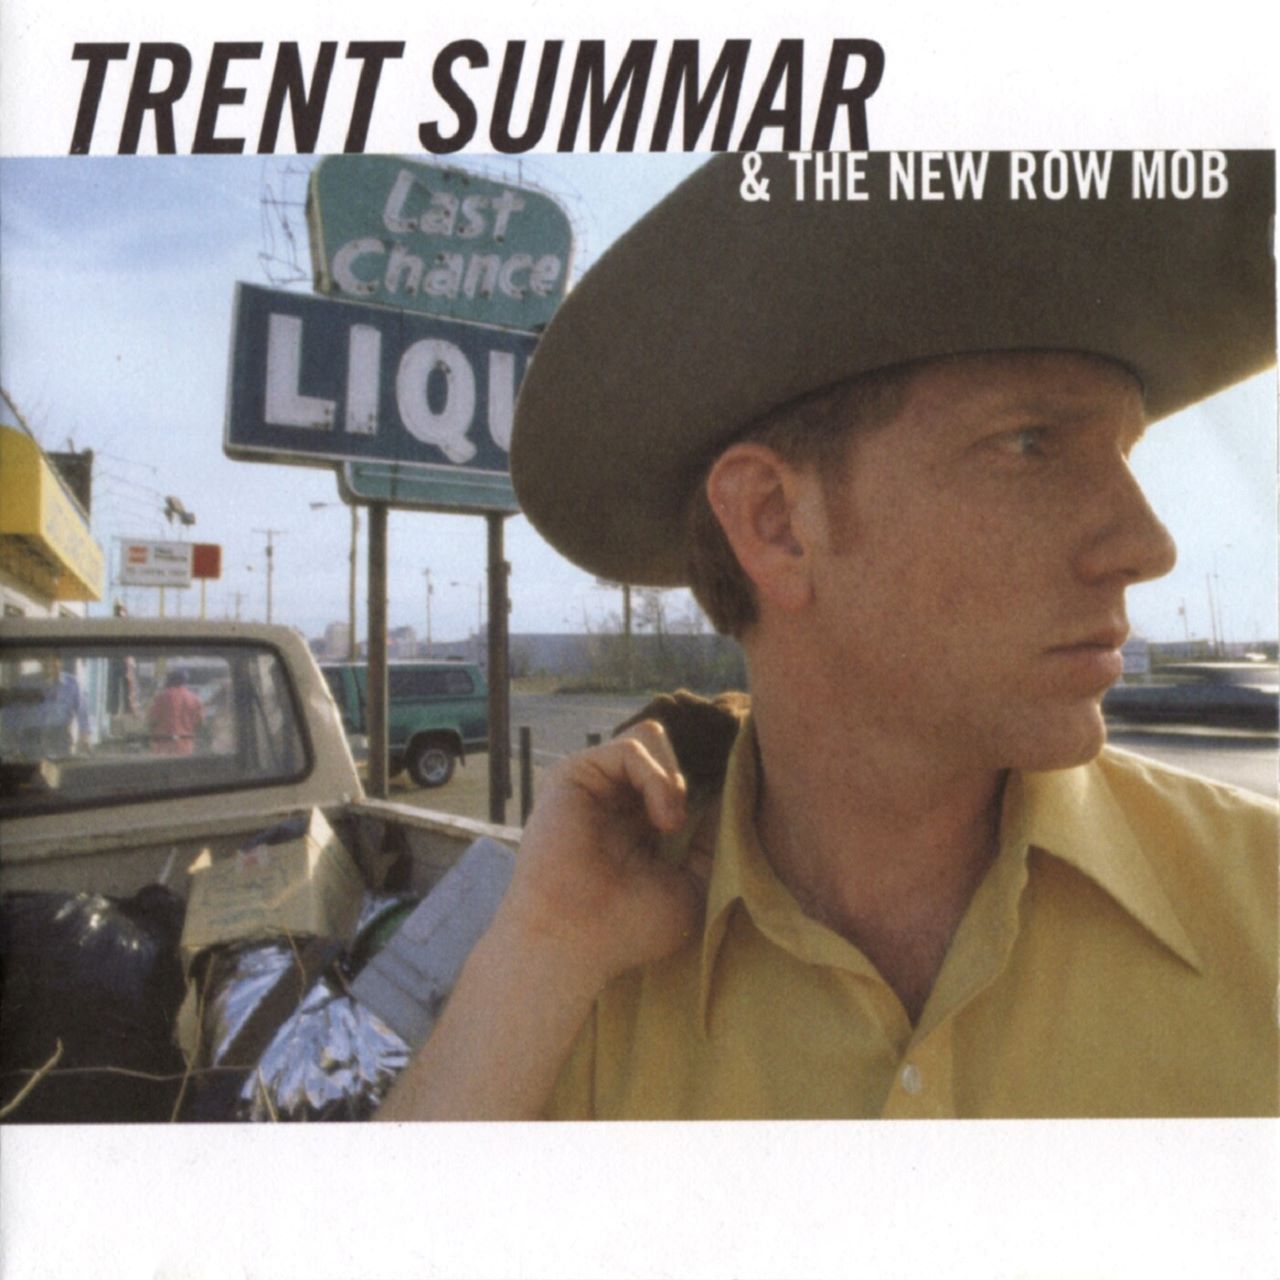 Trent Summar & New Row Mob - Trent Summar & New Row Mob cover album